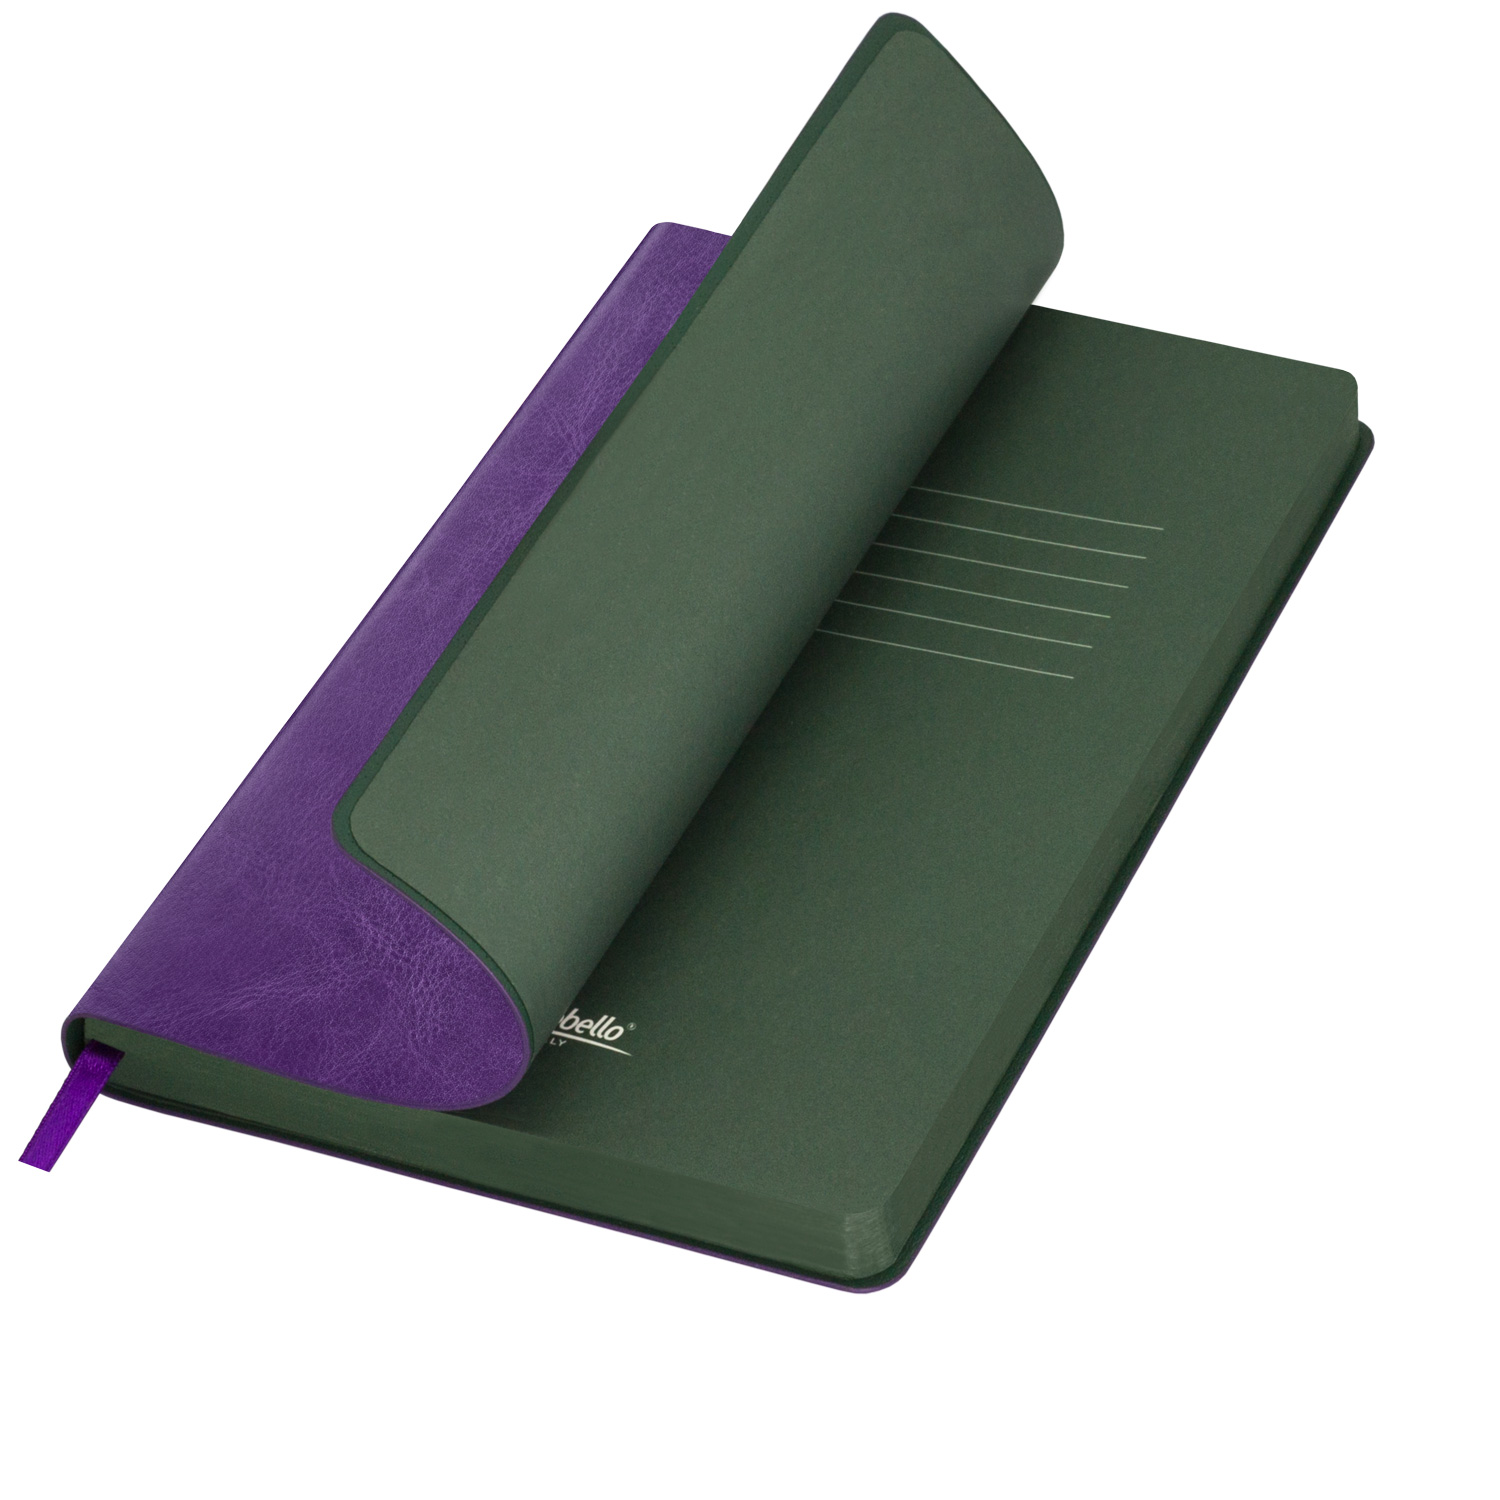 Артикул: A15256.034 — Ежедневник Portobello Trend, River side, недатированный, фиолетовый/зеленый